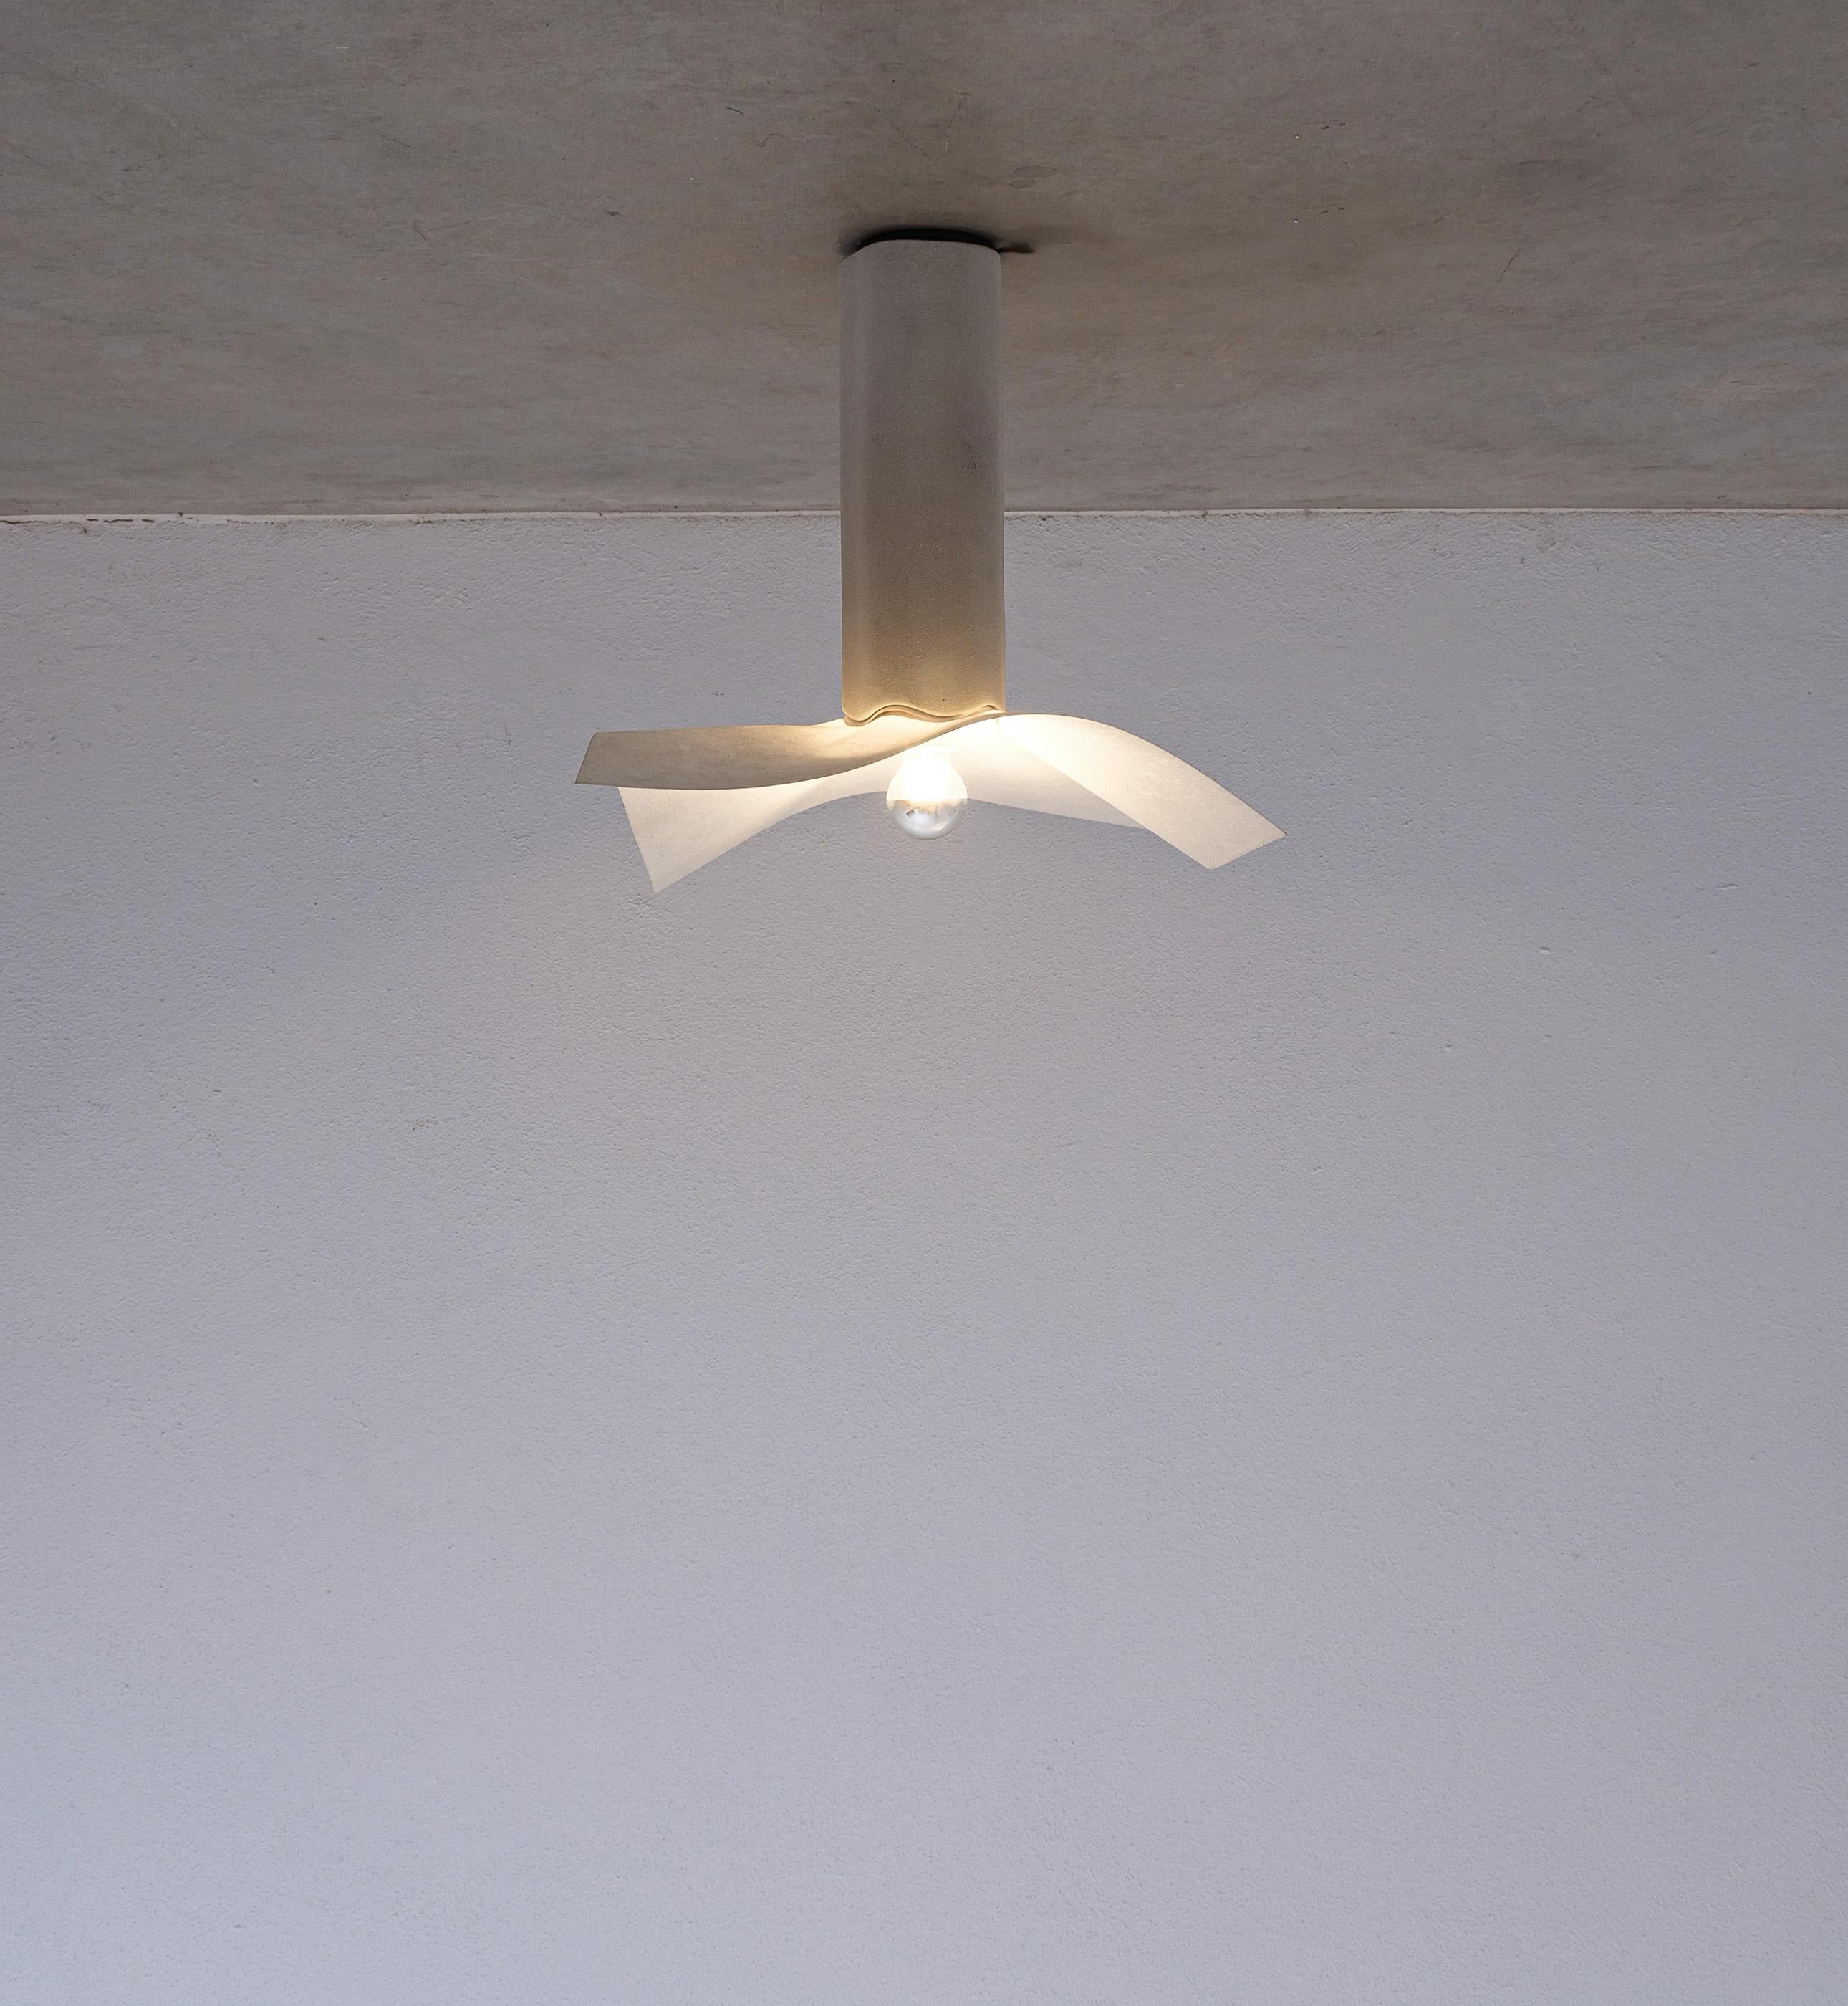 Mario Bellini Flush Mount Lamp Area 50 par Artemide, Italie, 1976

Conçue à l'origine comme une lampe de table, nous avons modifié cette lampe en céramique rare pour qu'elle puisse être fixée au plafond. Il est doté d'un beau socle en céramique à